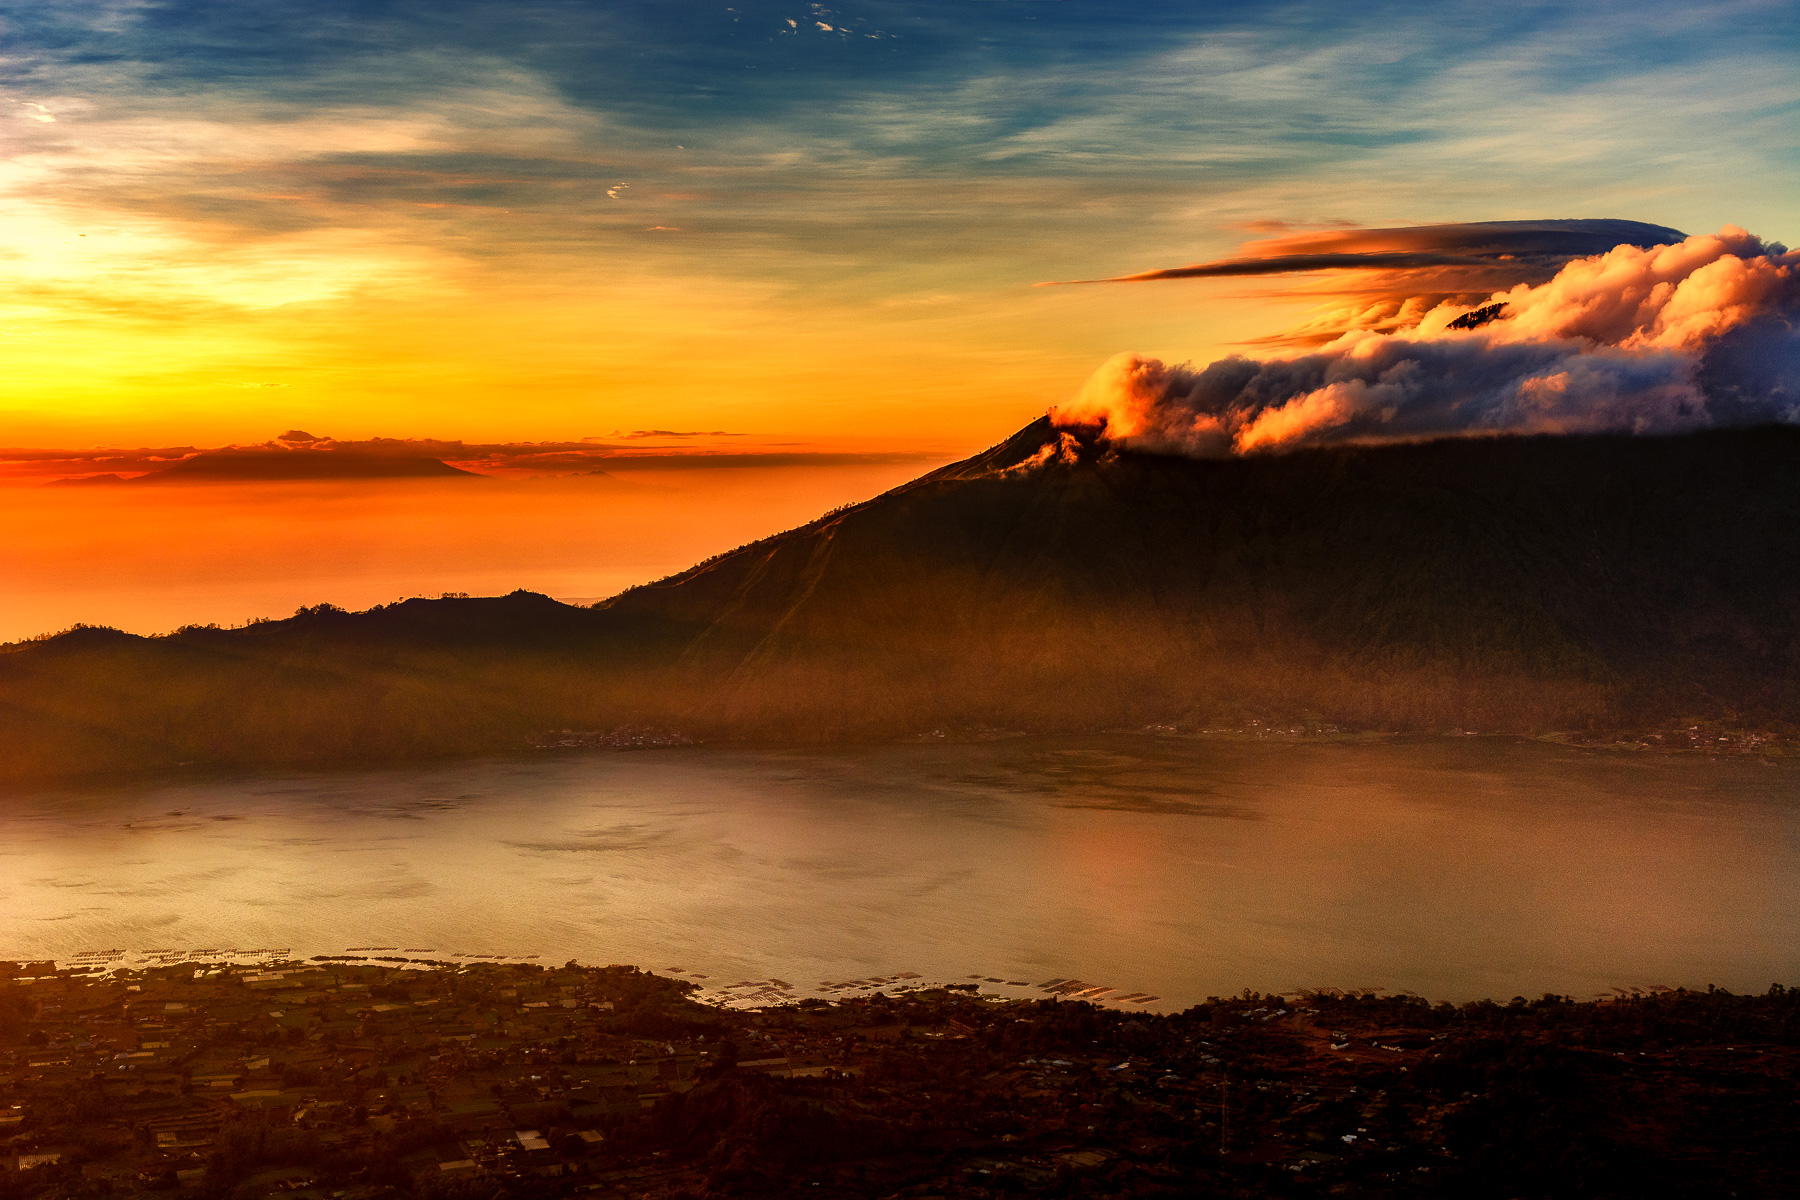 Mt. Batur Caldera Sunrise